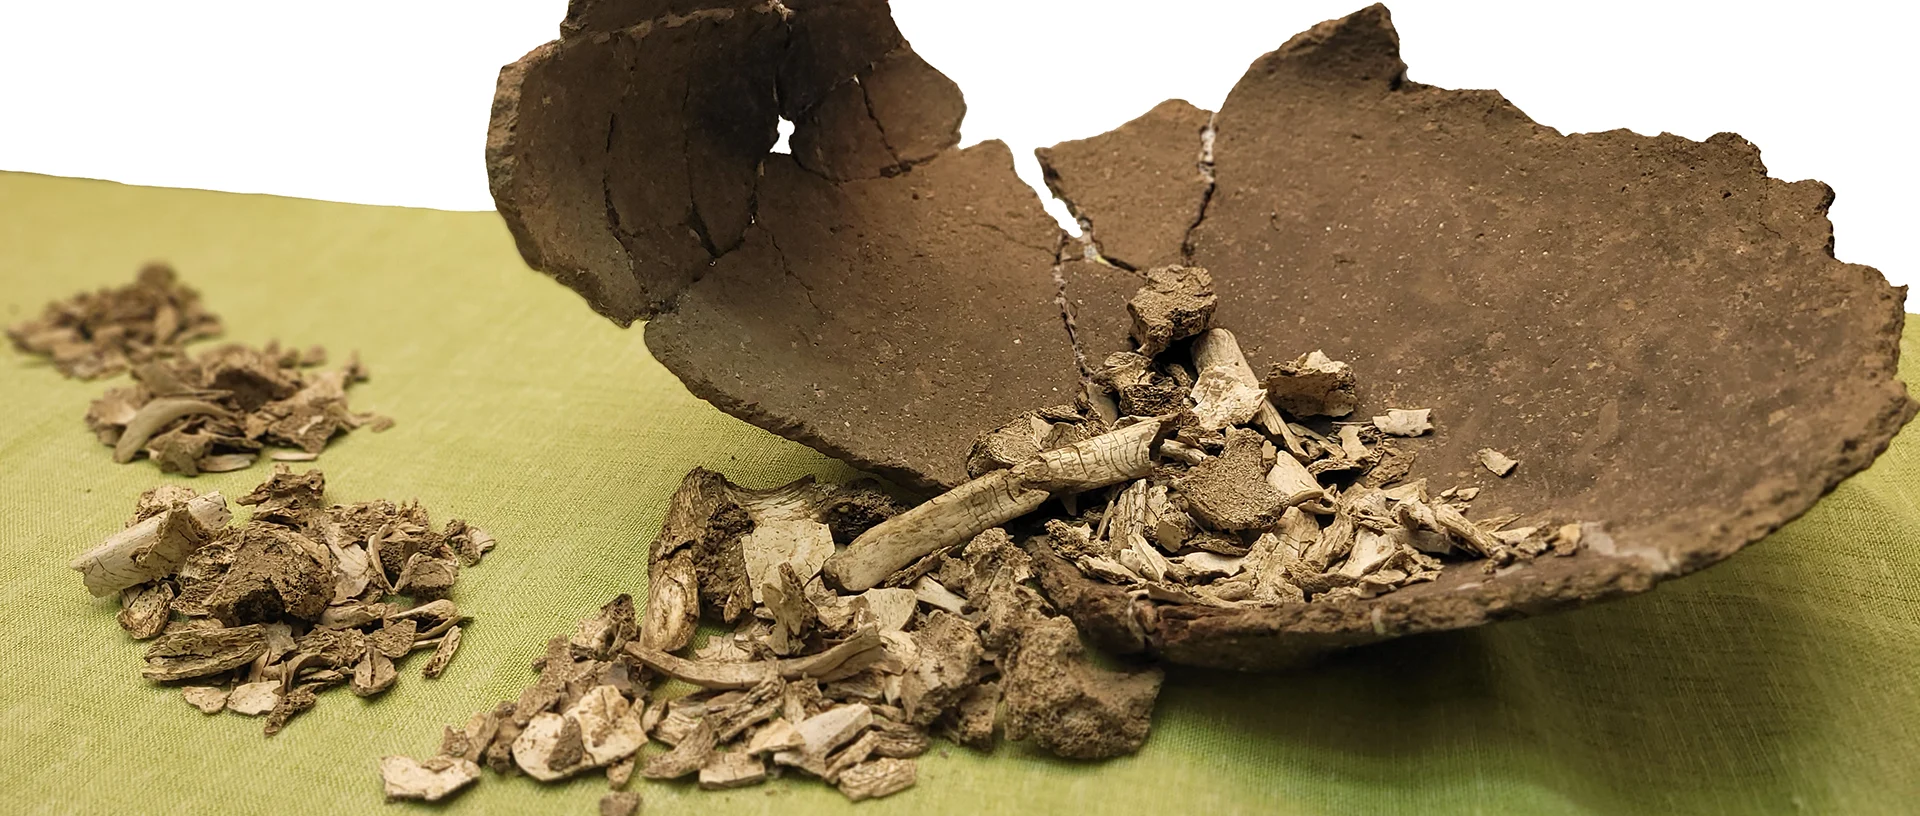 Foto einer zerbrochenen Urne, auf deren Boden sich Knochenfragmente befinden